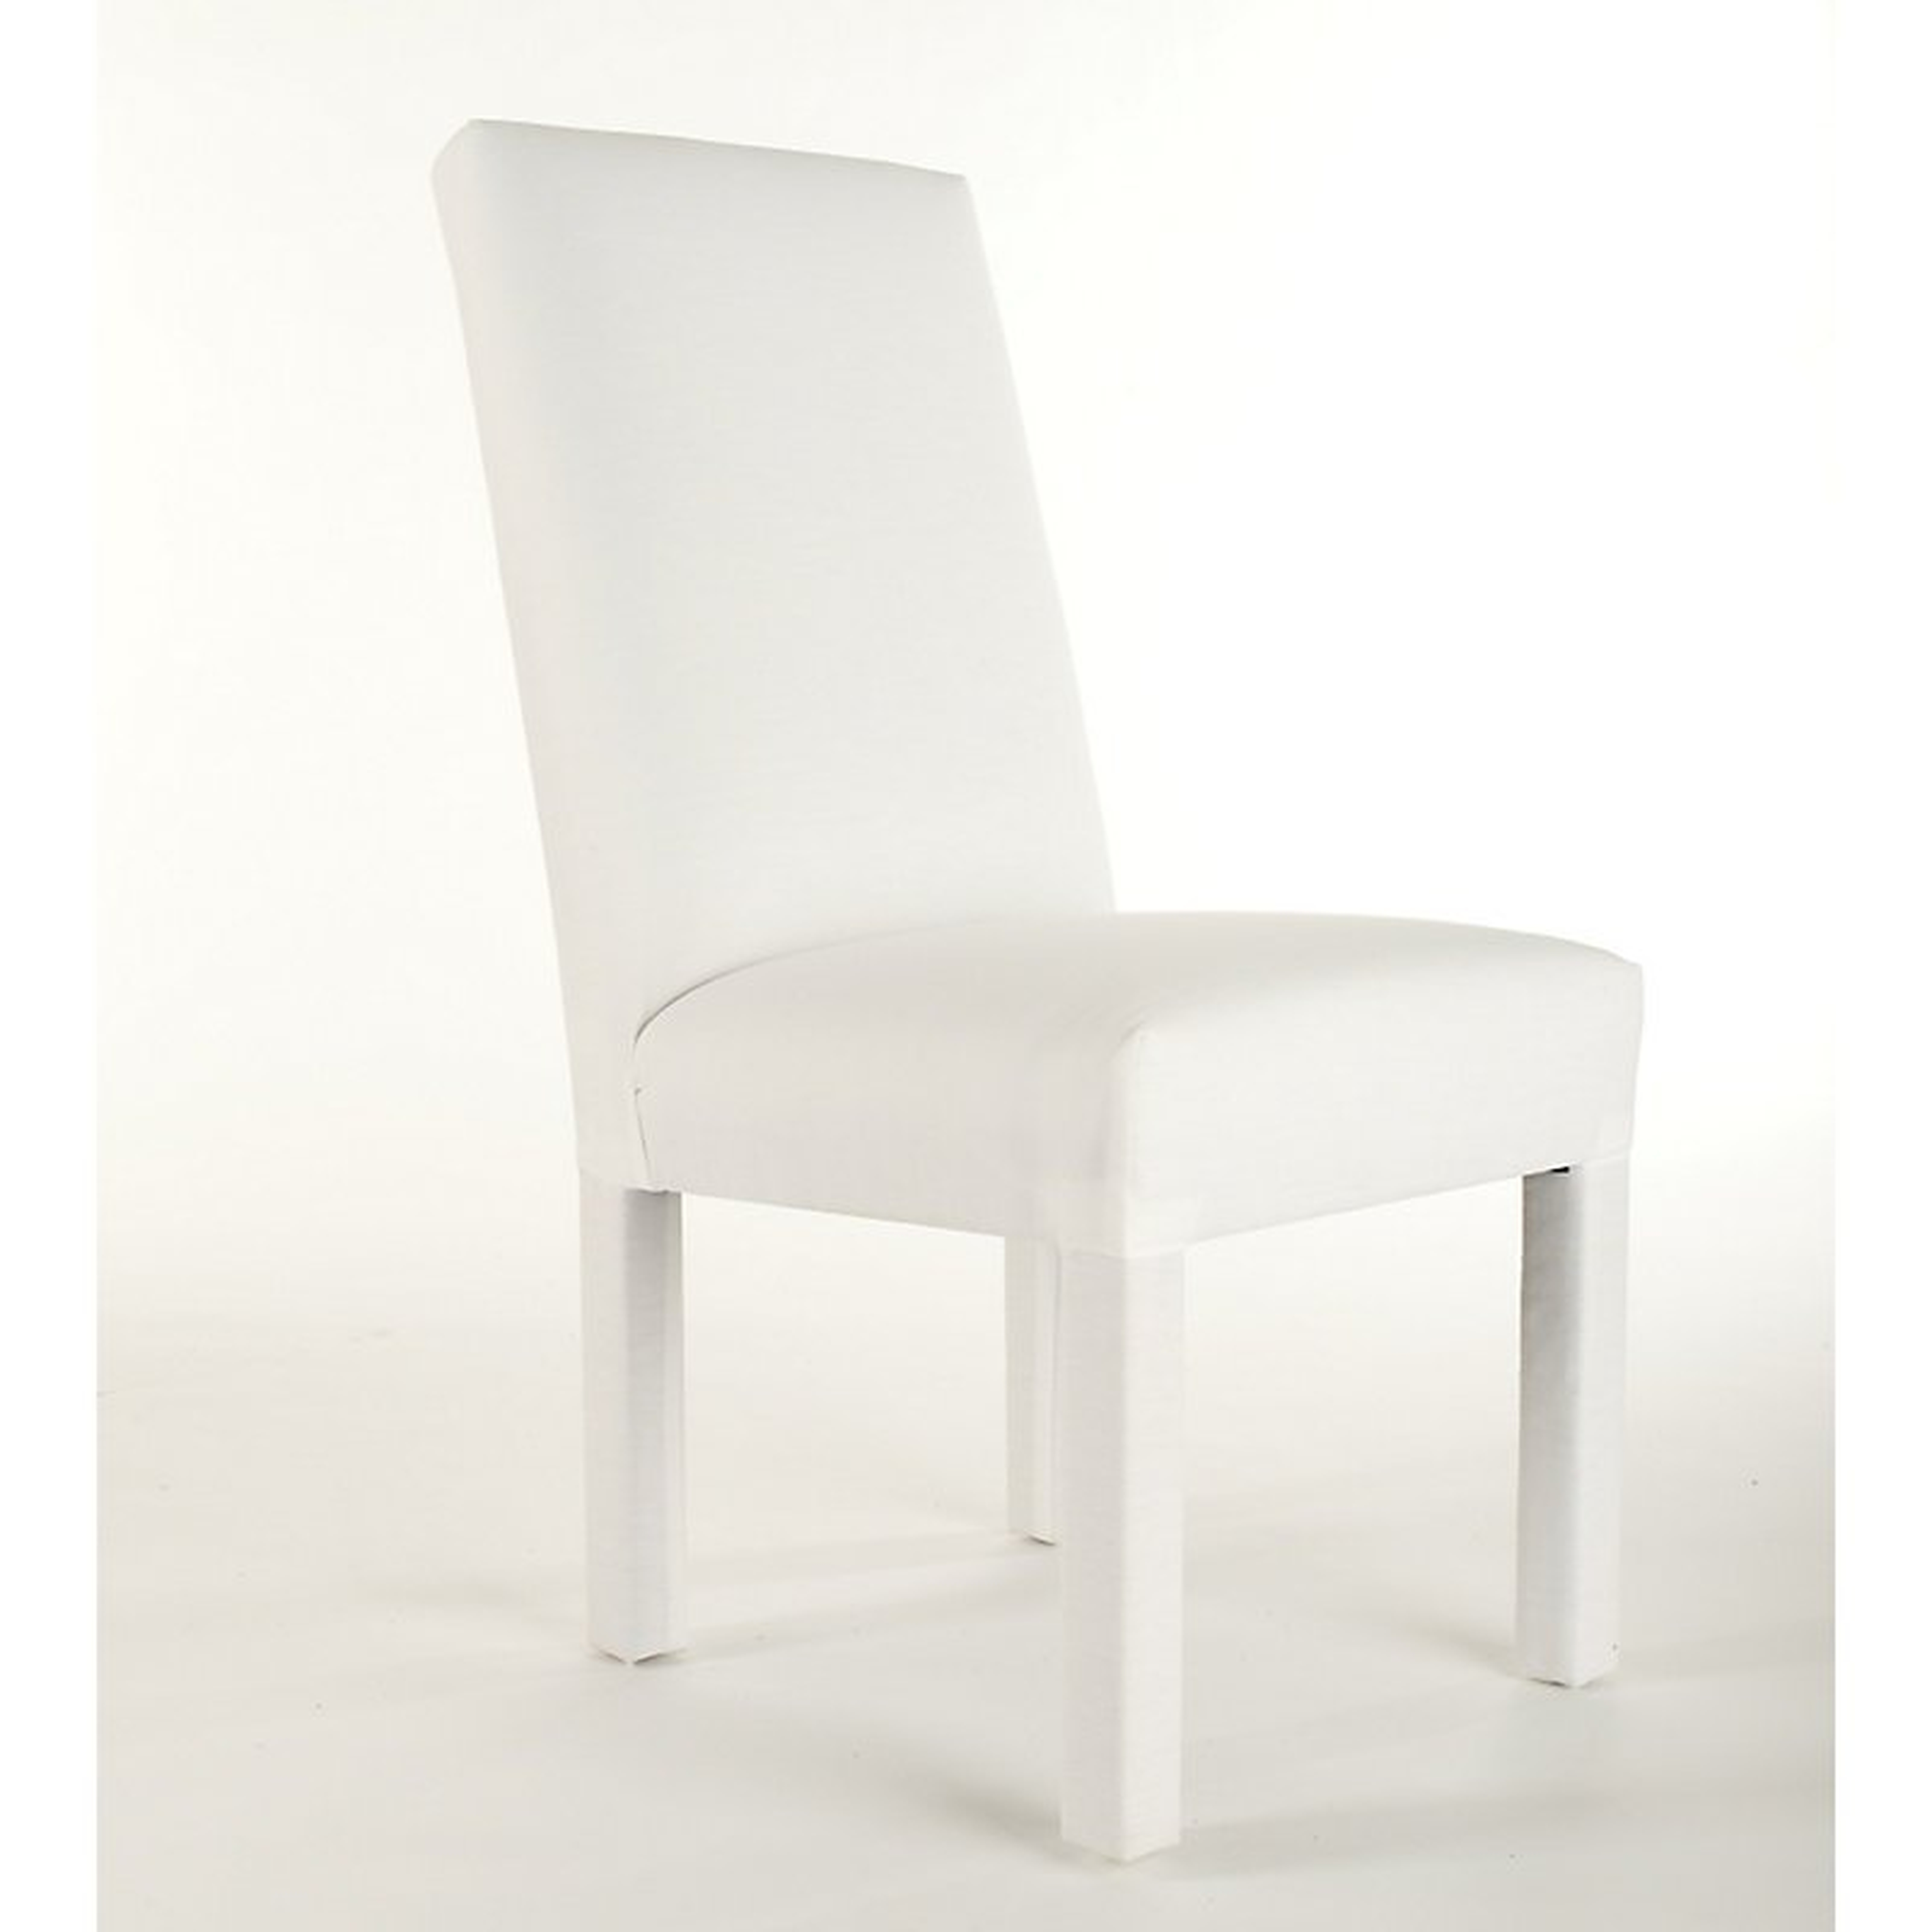 Ballard Designs Parsons Chair Frame - Ballard Designs